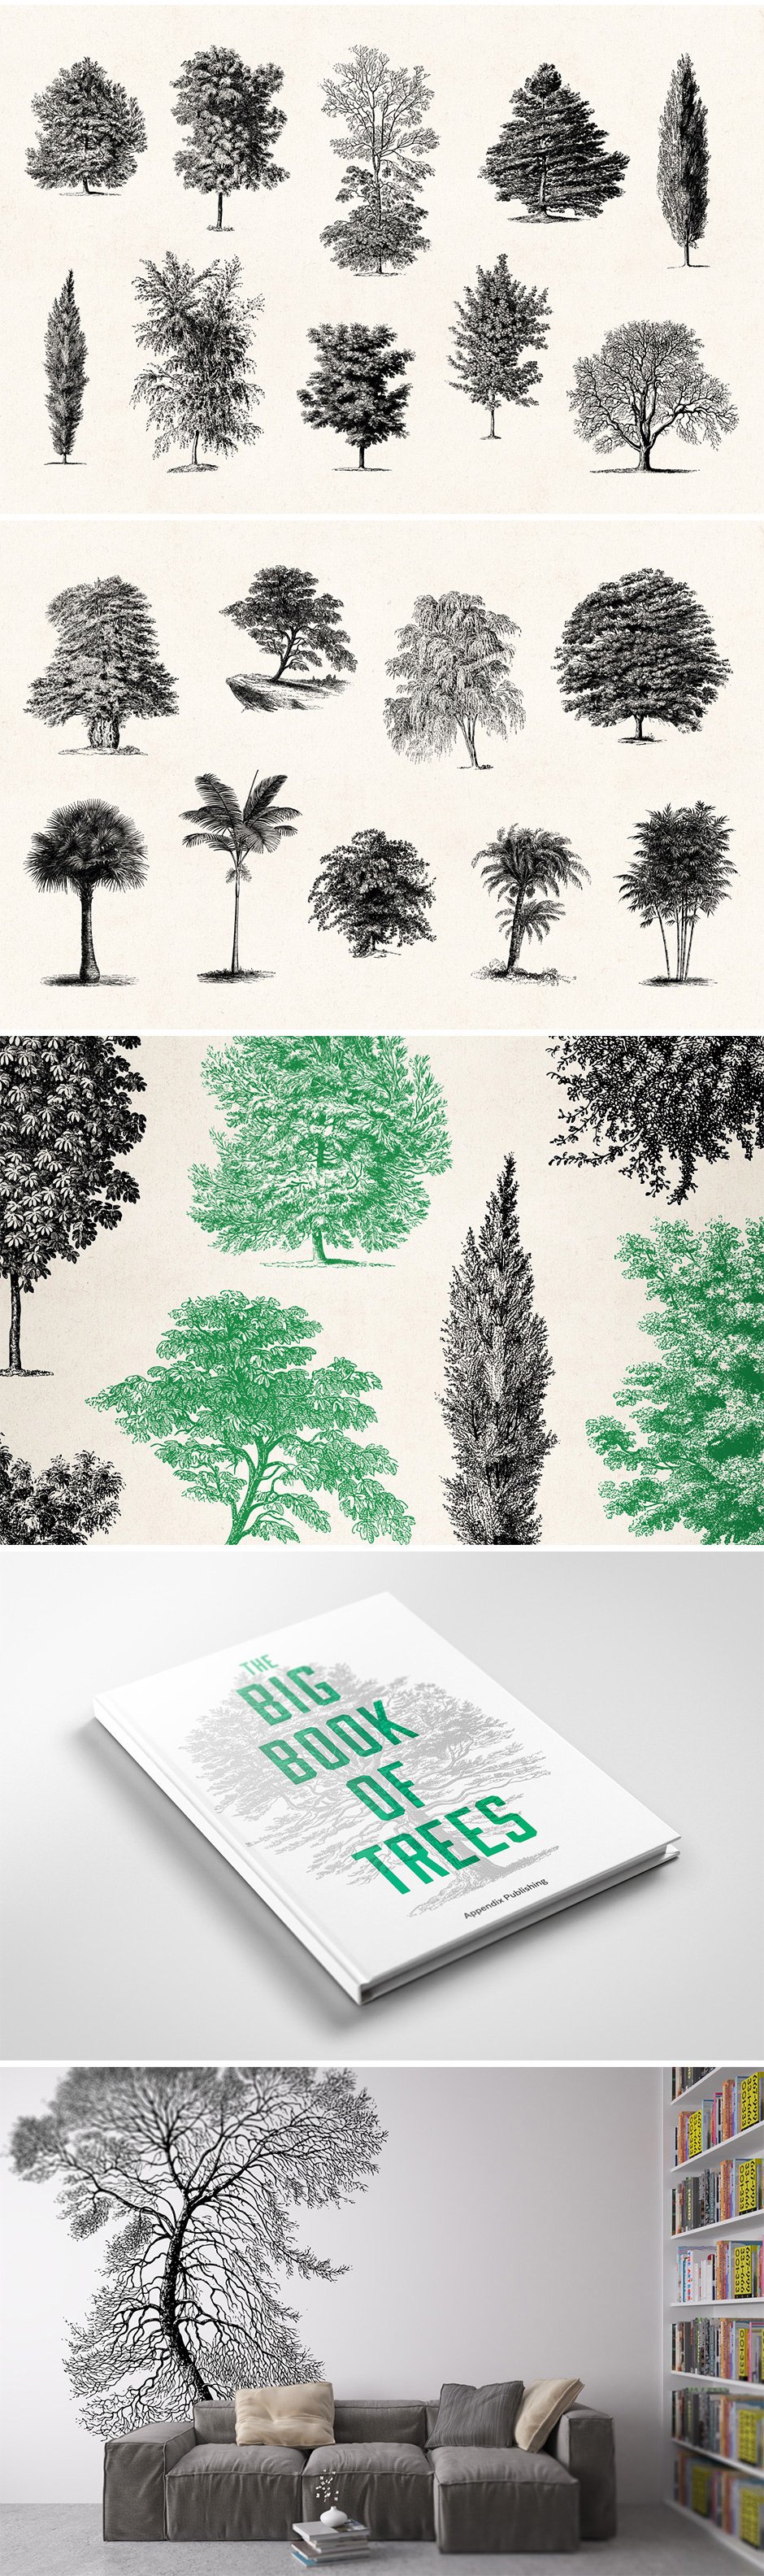 …Vintage Tree Illustrations Set